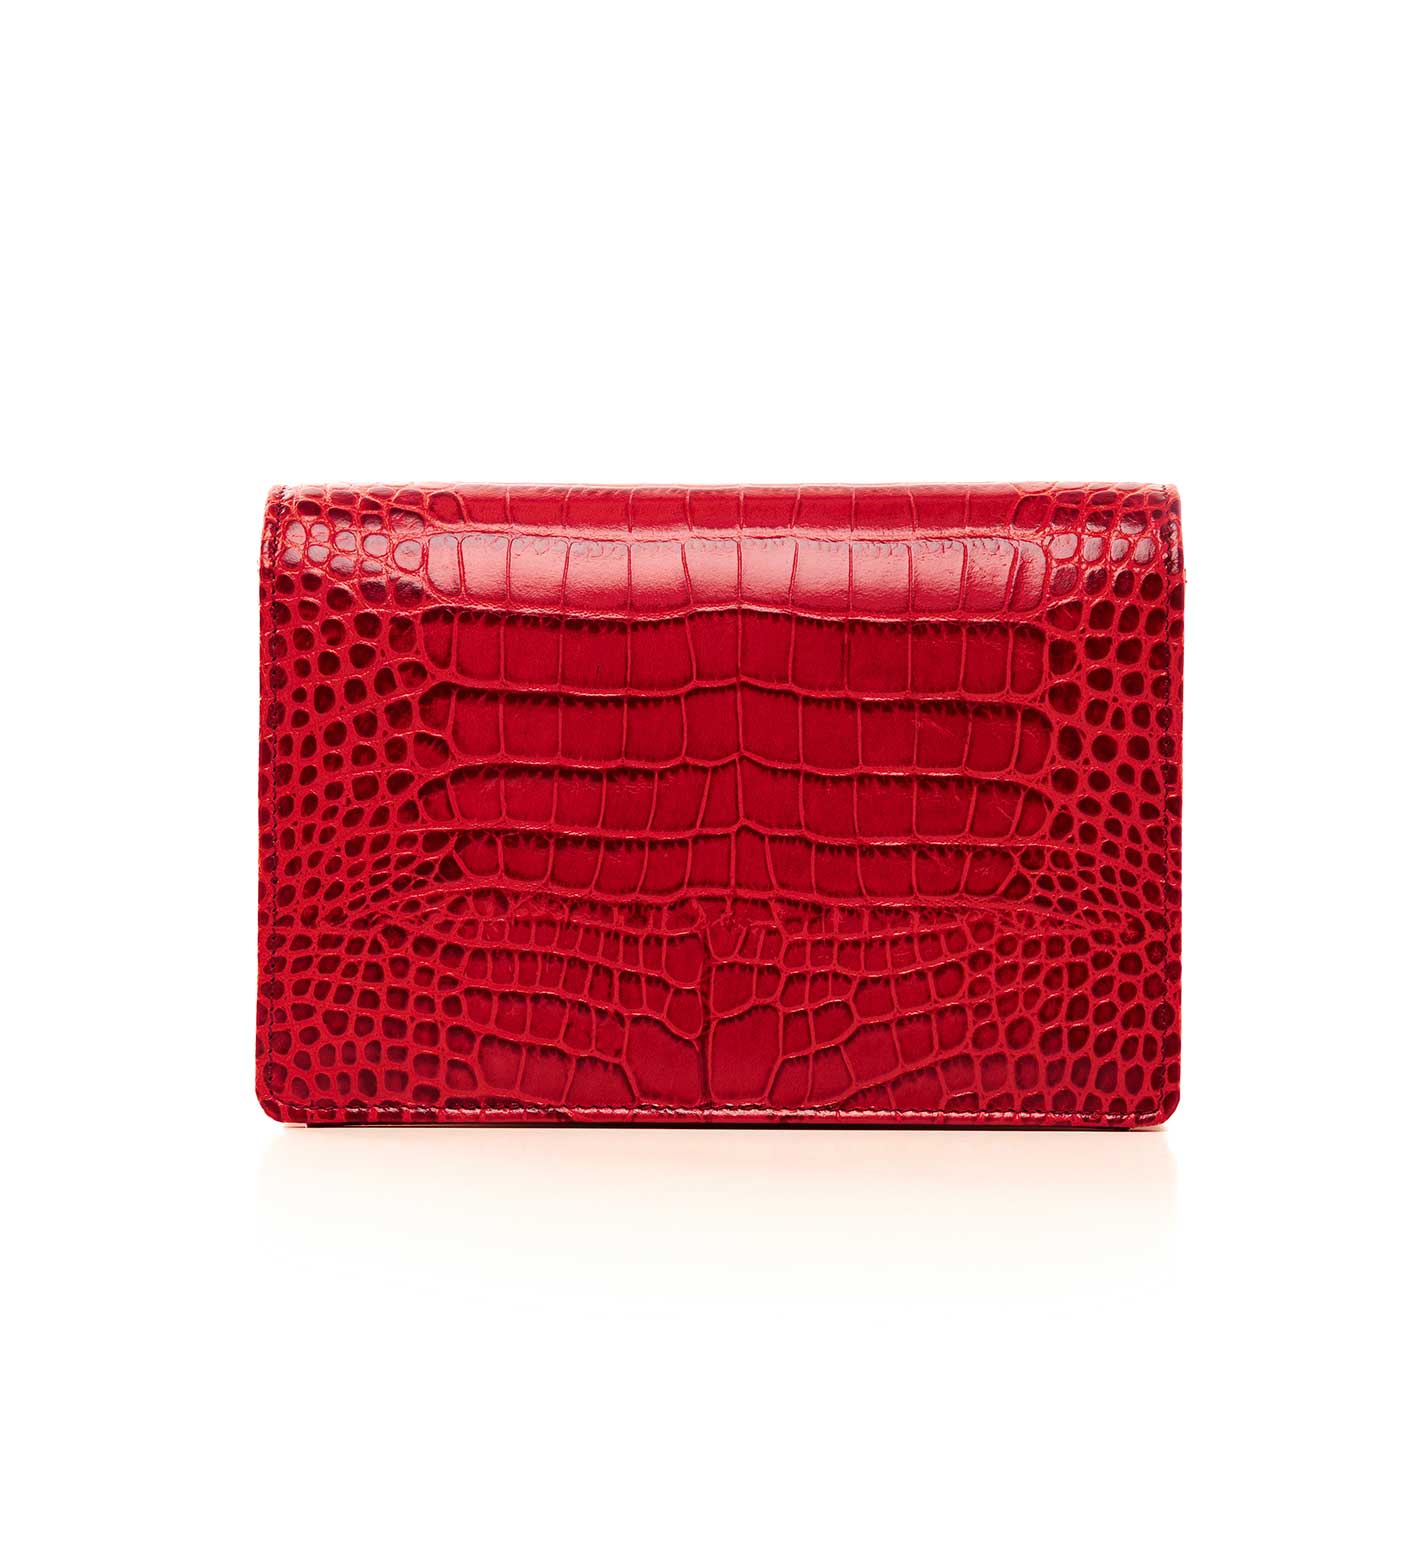 Crocodile Red leather Shoulder bag - Slaylebrity